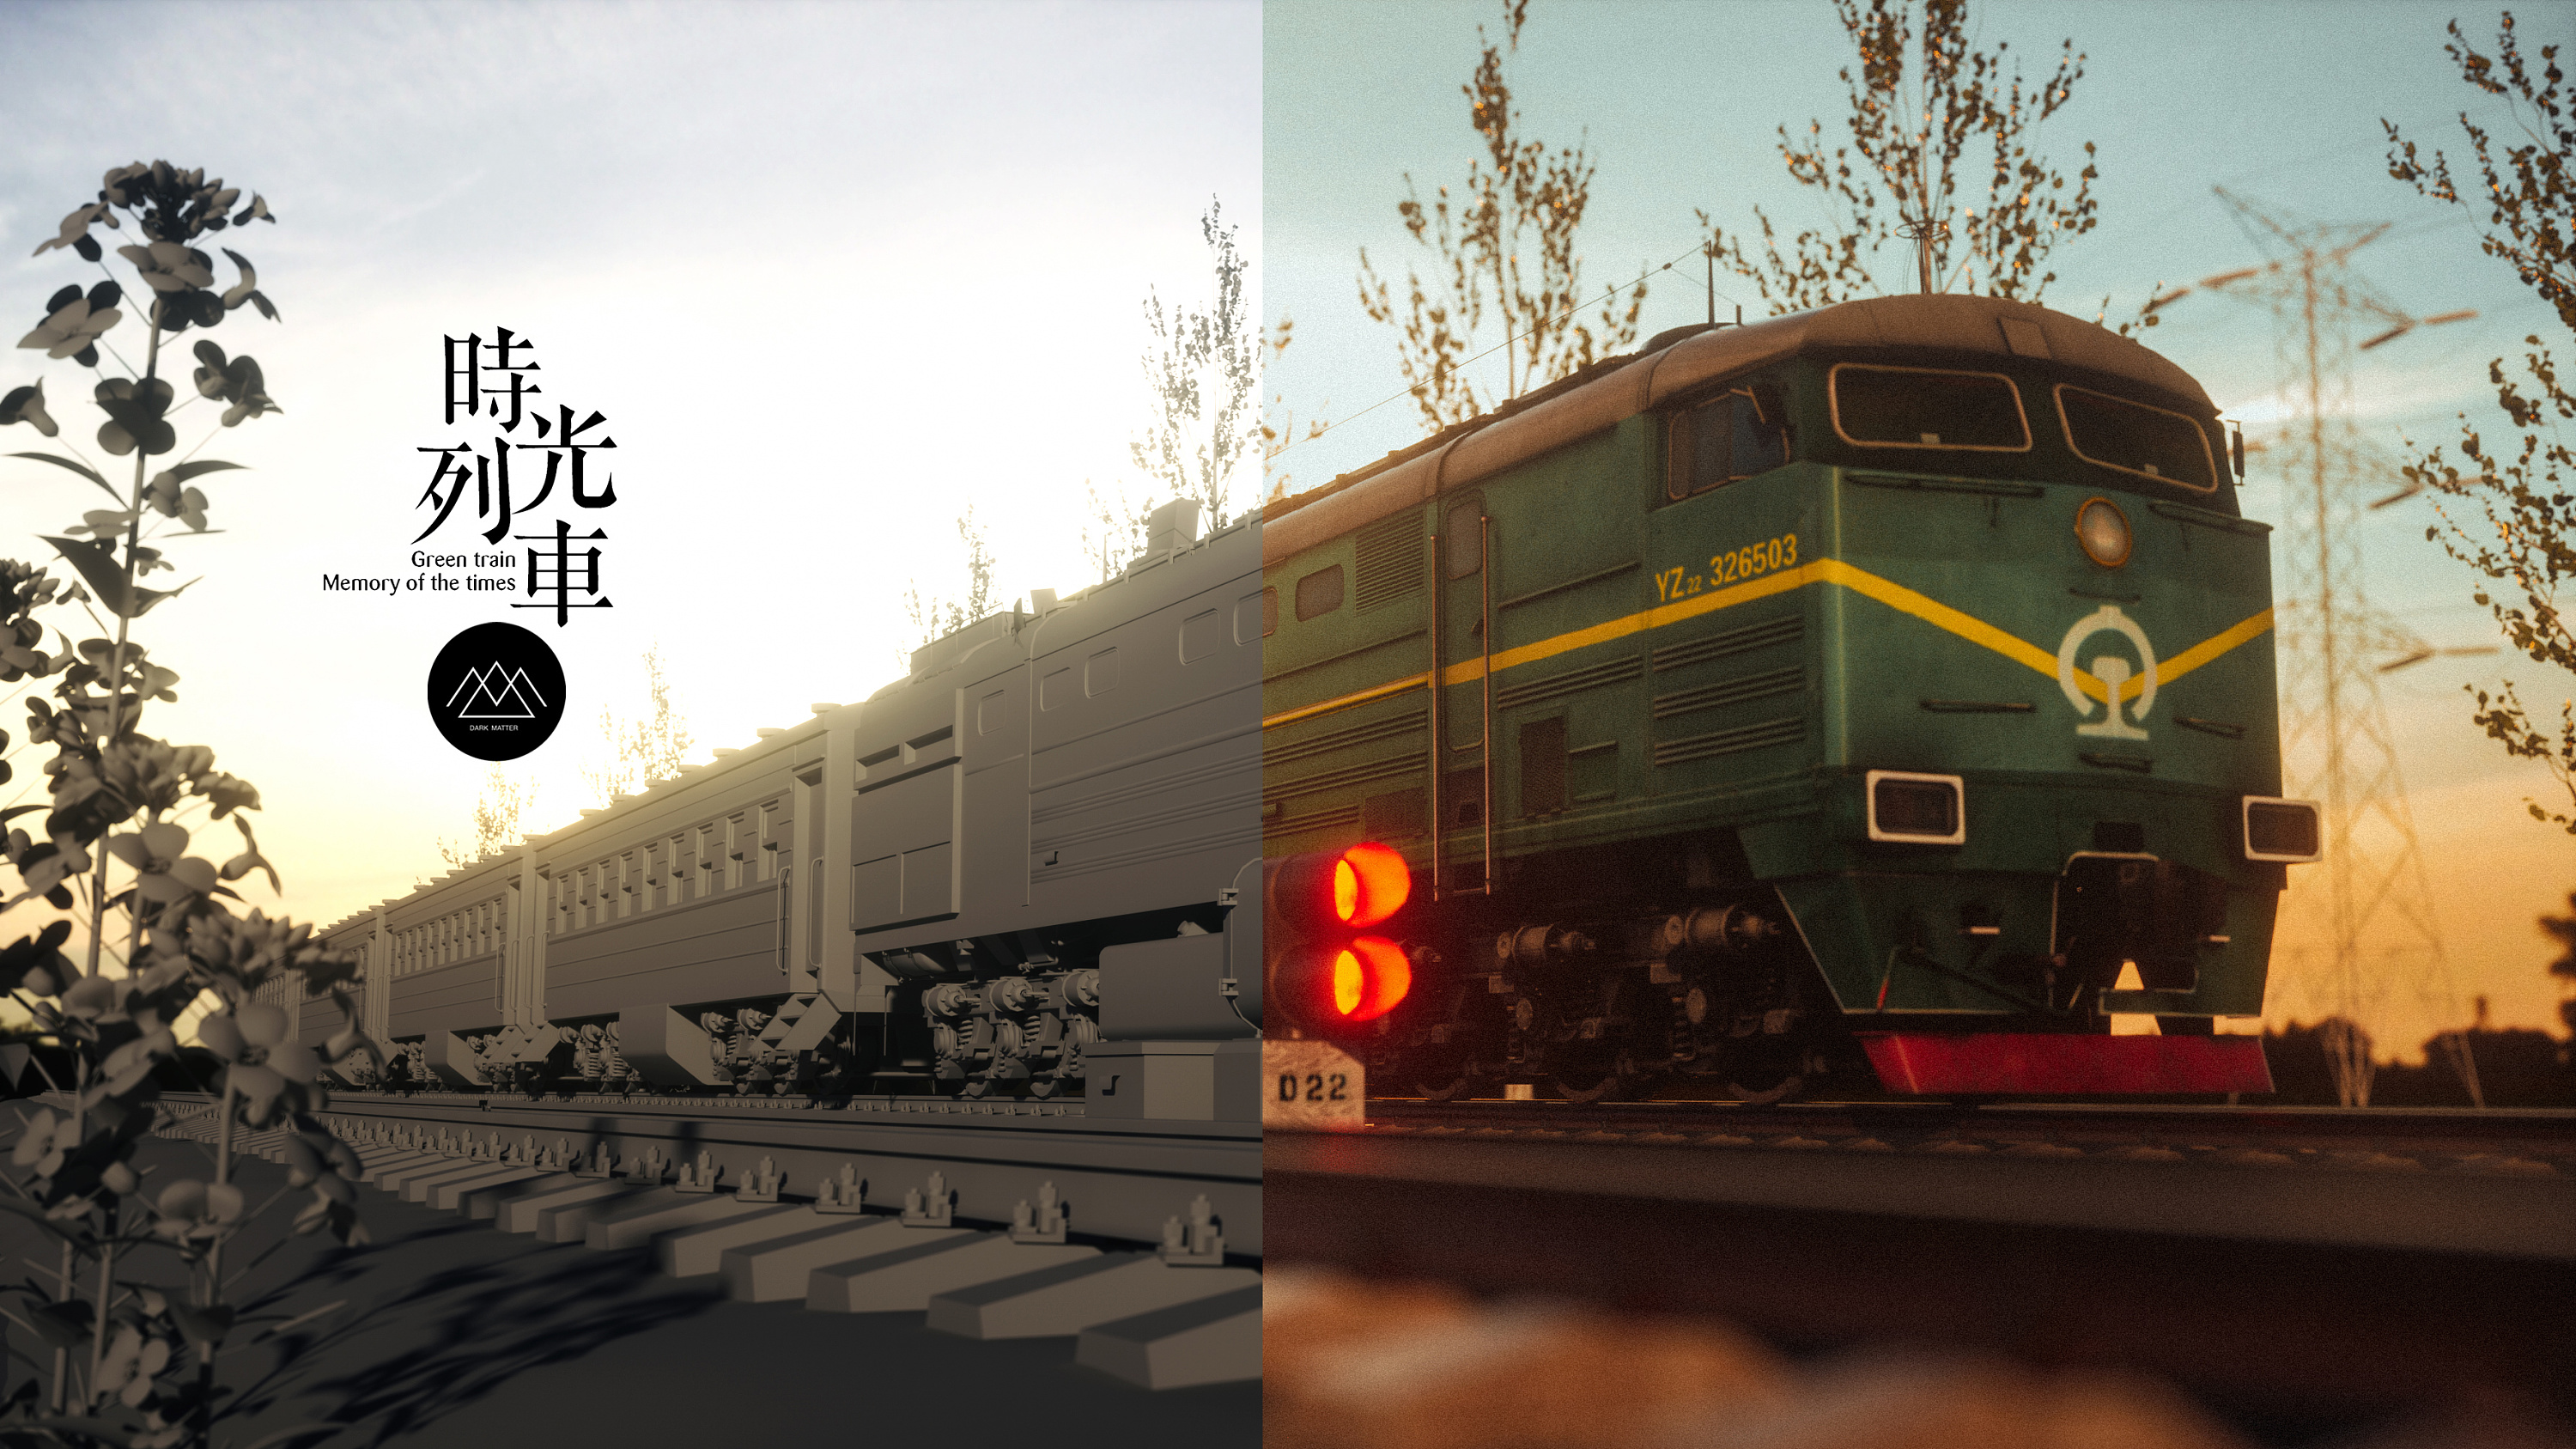 【时光列车】绿皮火车的记忆